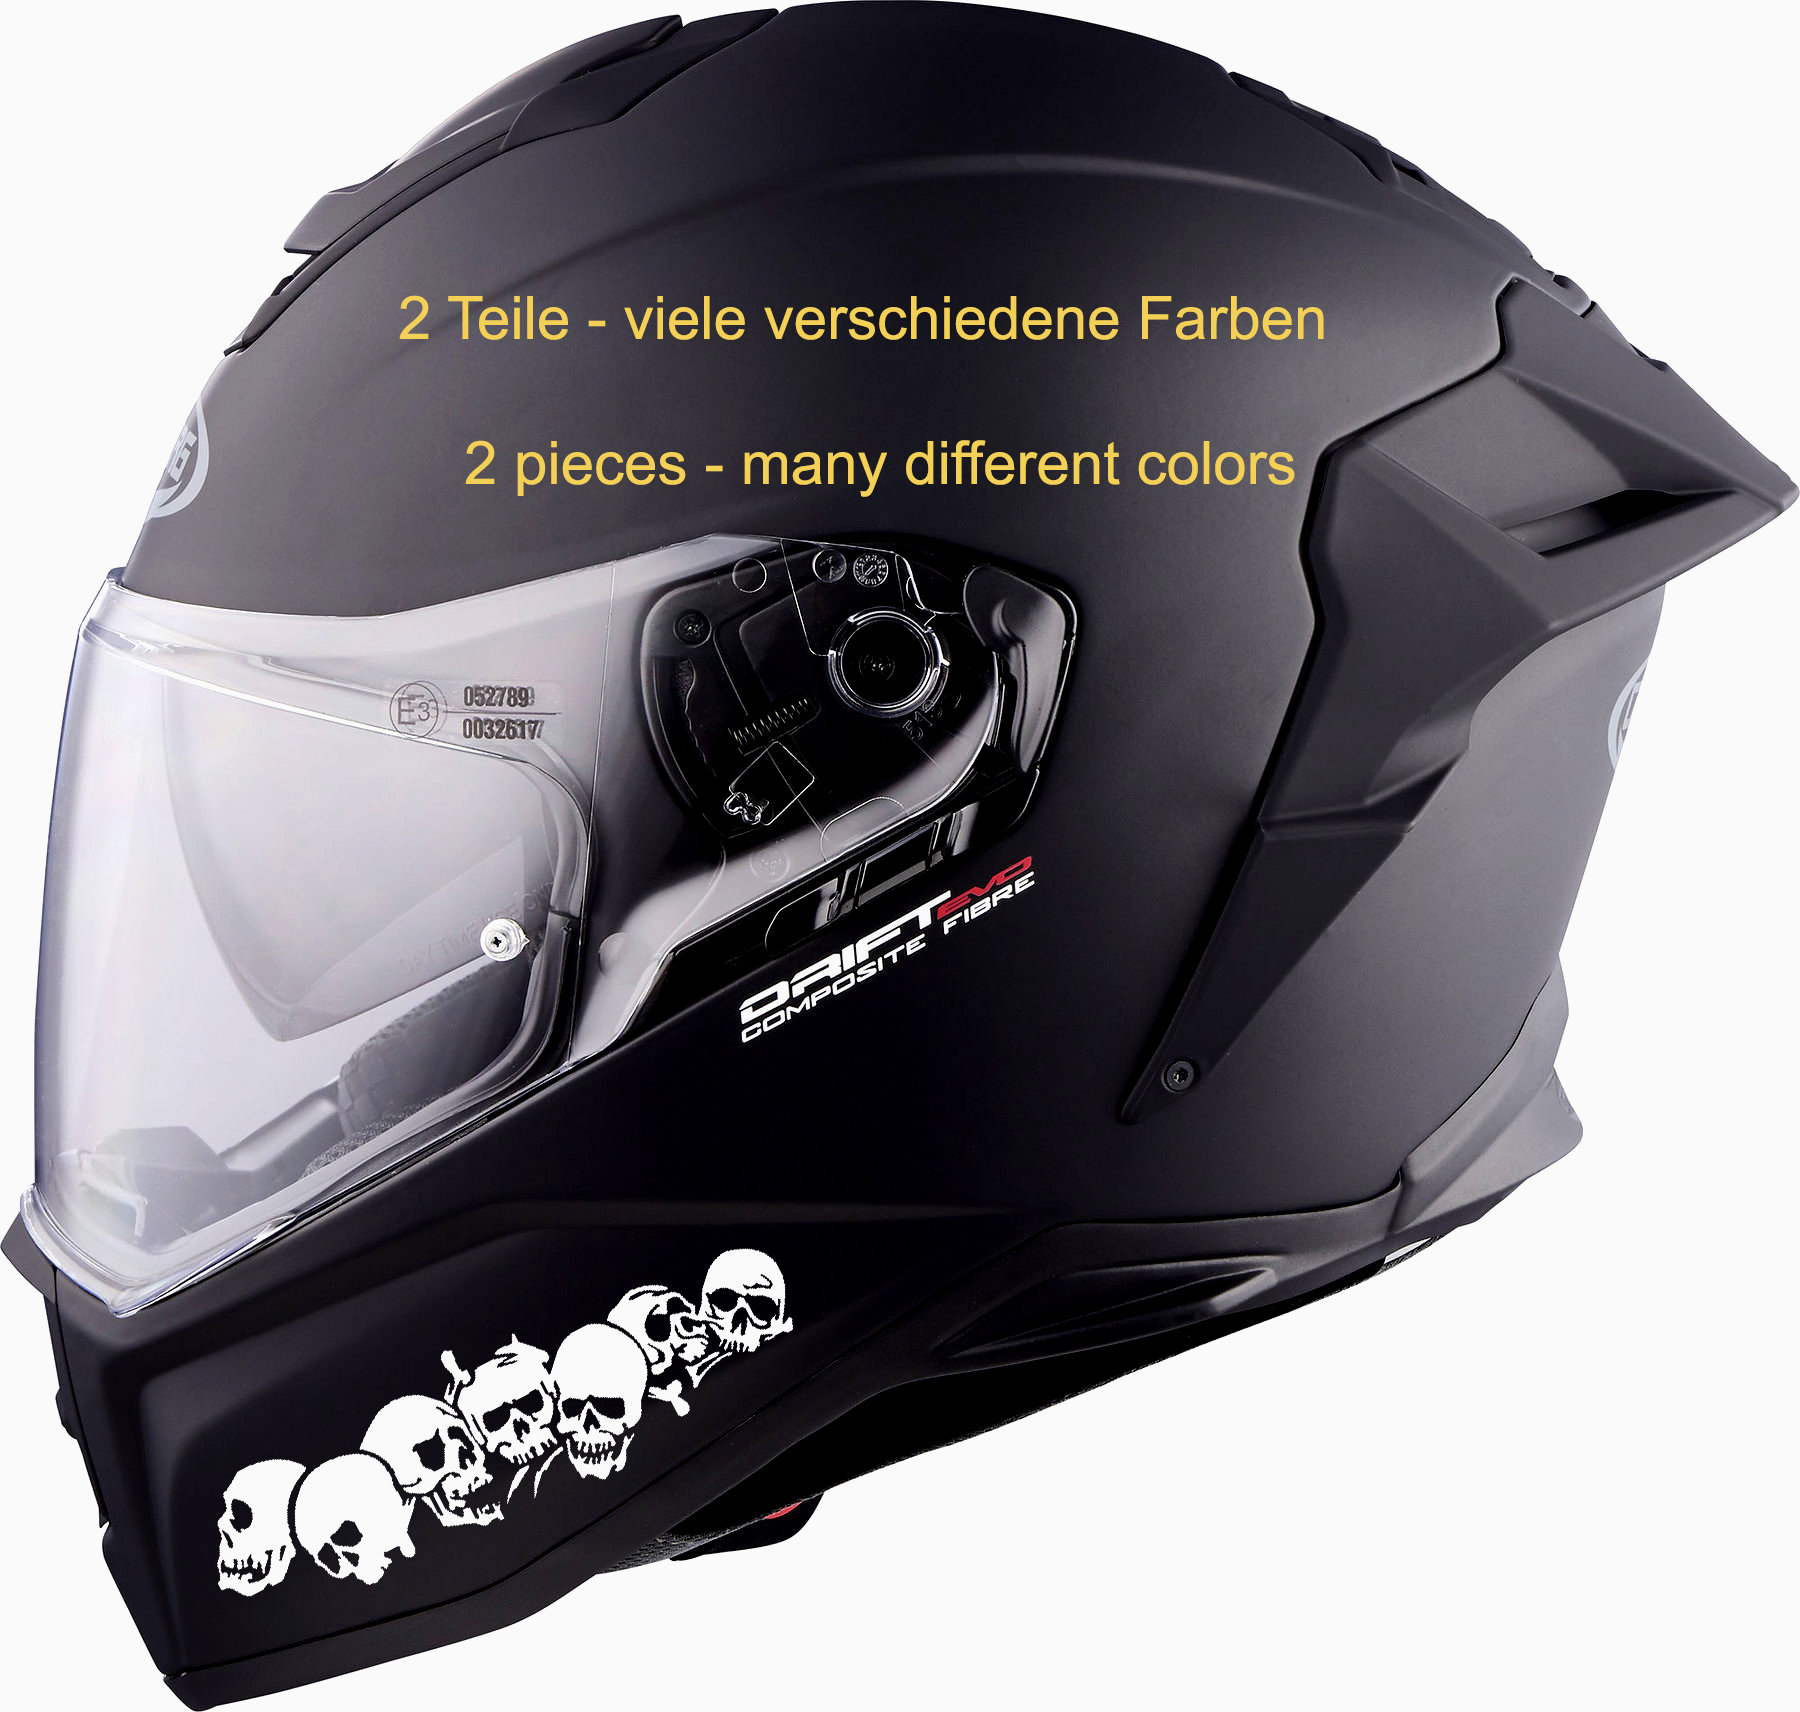 Motorcycle helmet decals - .de